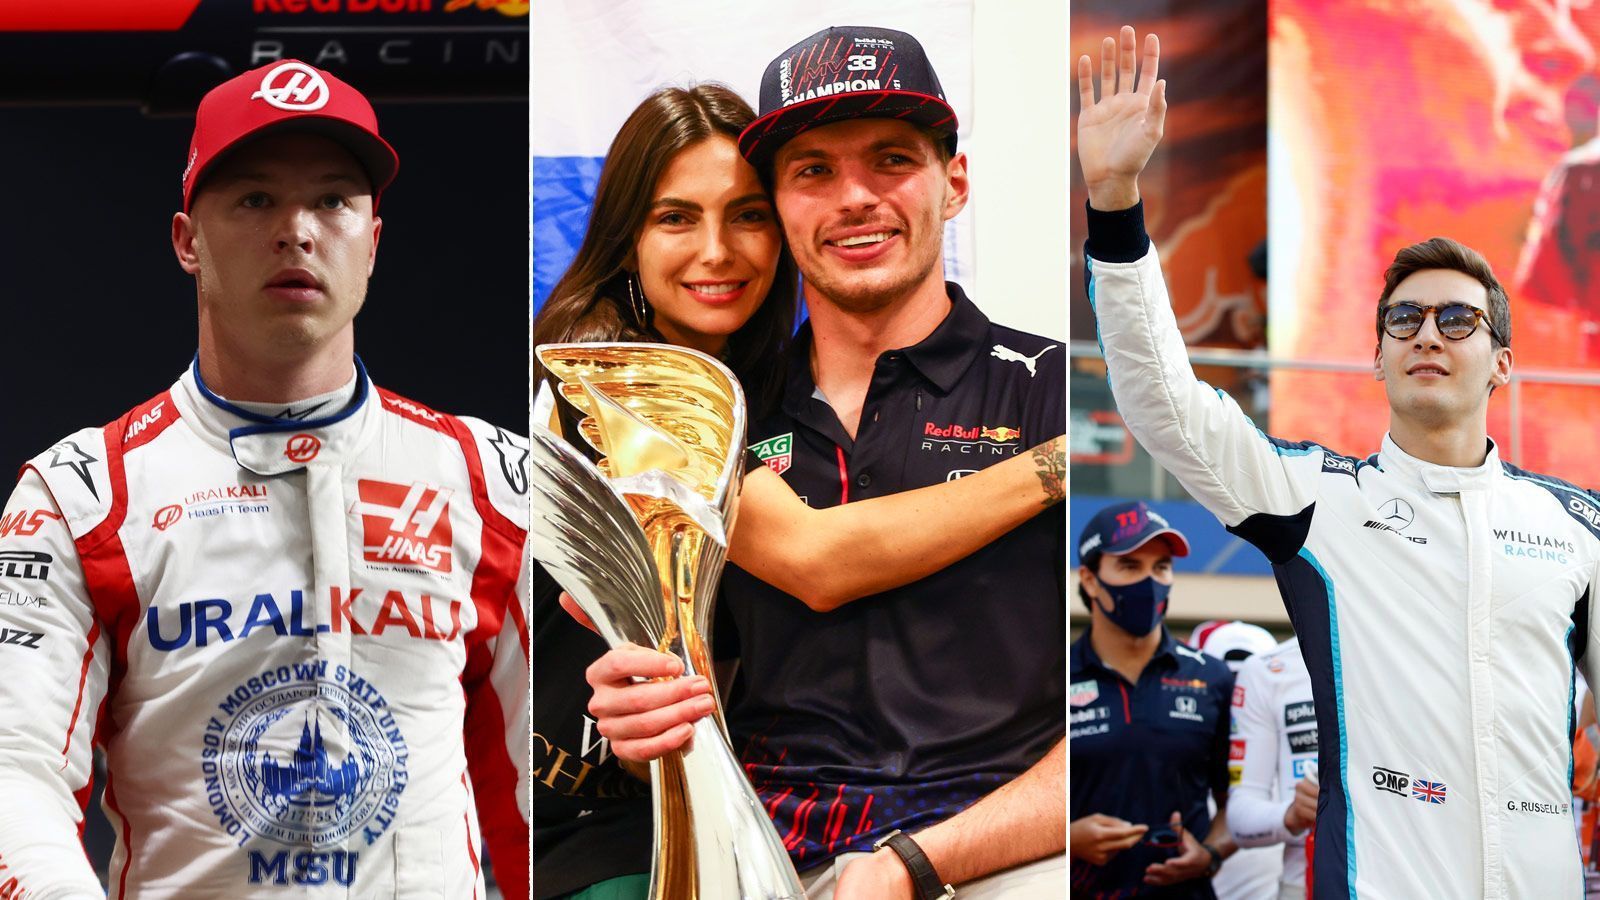 
                <strong>Formel 1: Die Gewinner und Verlierer der Saison 2021</strong><br>
                Die Formel-1-Saison 2021 endete mit einem dramatischen Finale und sicherte Max Verstappen die Weltmeisterschaft. ran nennt die Gewinner und Verlierer dieser denkwürdigen Saison.
              